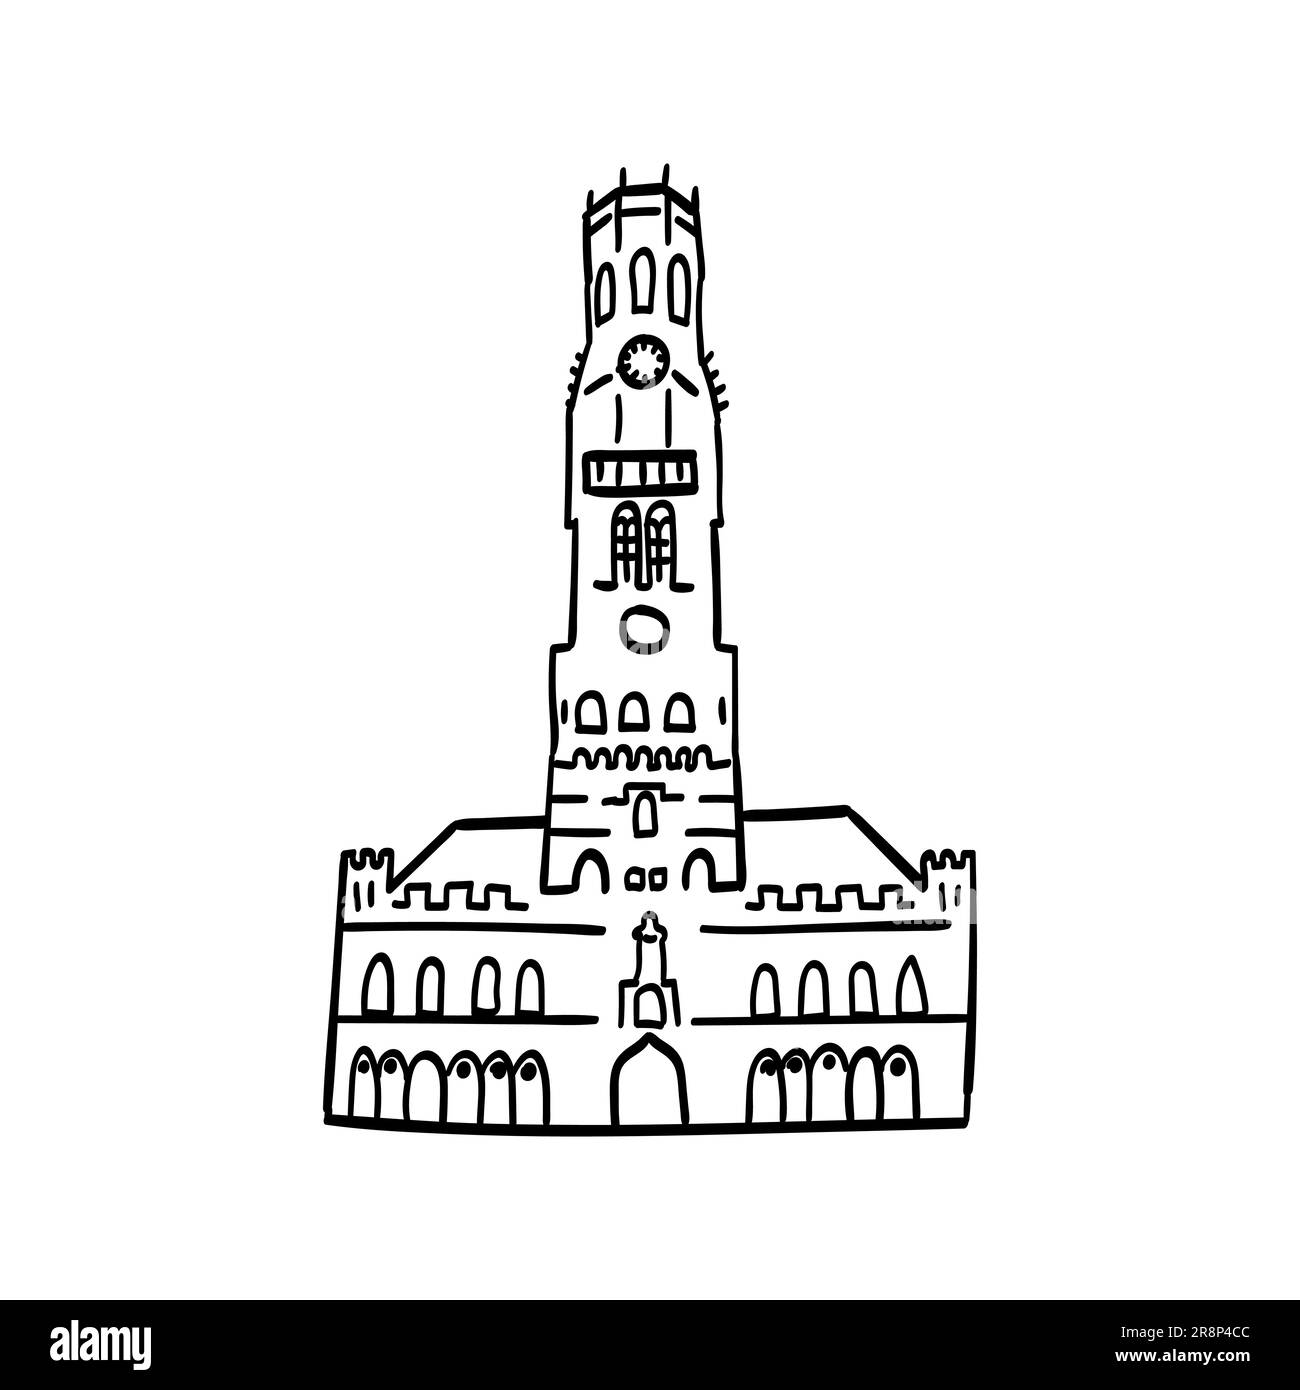 Dessin à la main de l'icône de contour de doodle de bâtiment européen avec montre. Sites touristiques des villes d'europe. dessins simples de façades Illustration de Vecteur